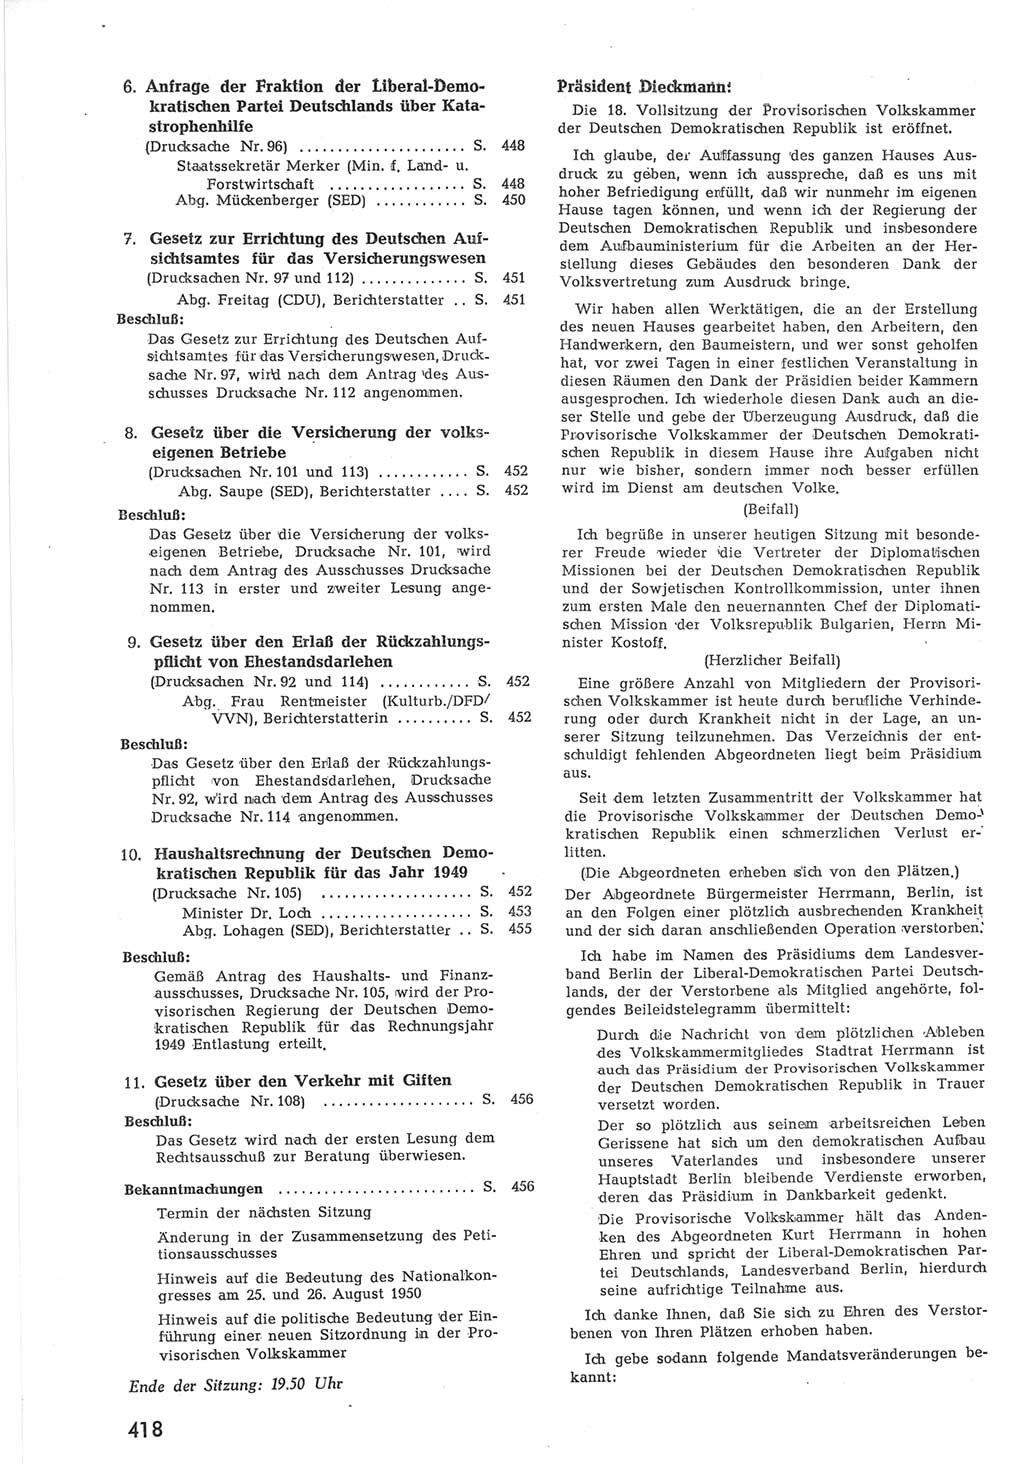 Provisorische Volkskammer (VK) der Deutschen Demokratischen Republik (DDR) 1949-1950, Dokument 436 (Prov. VK DDR 1949-1950, Dok. 436)